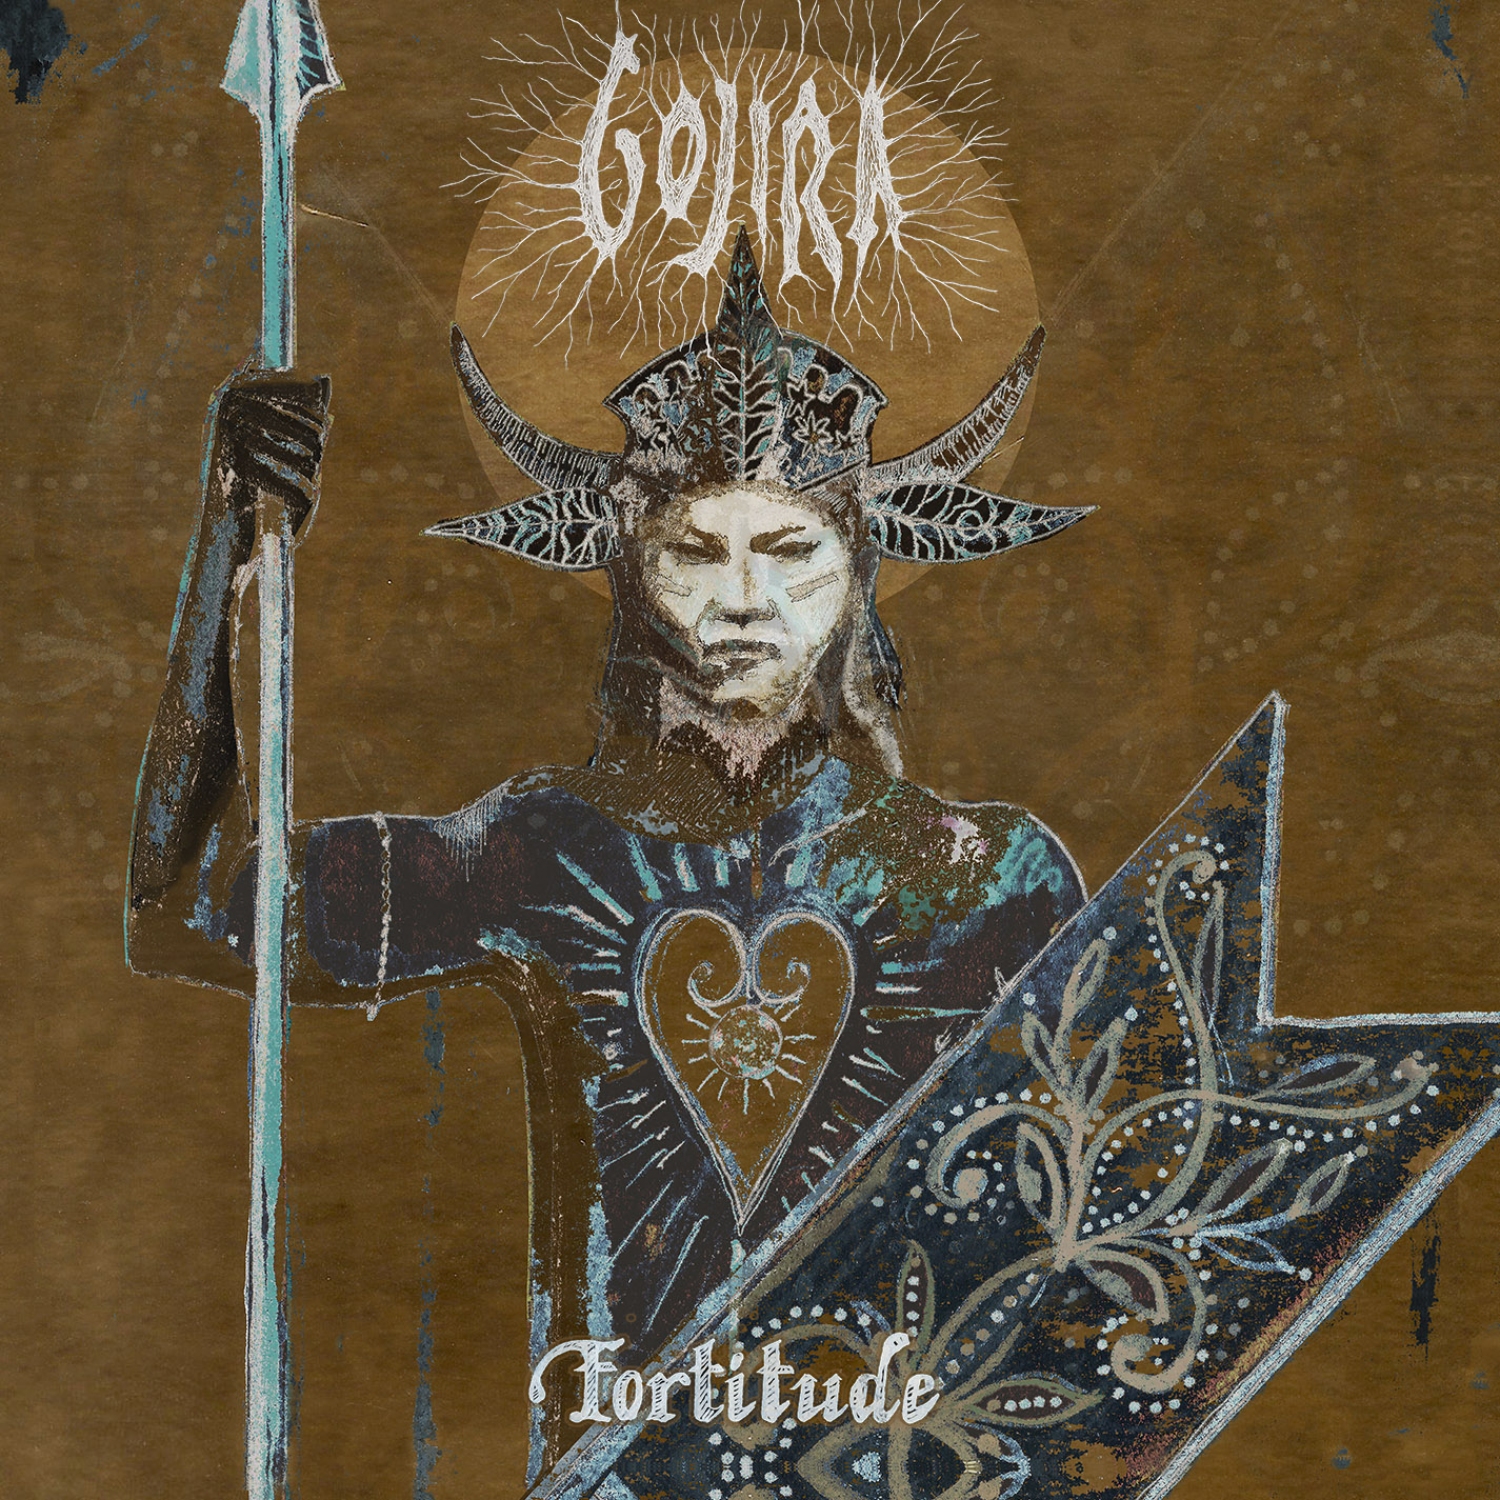 GOJIRA (FRA) – Fortitude